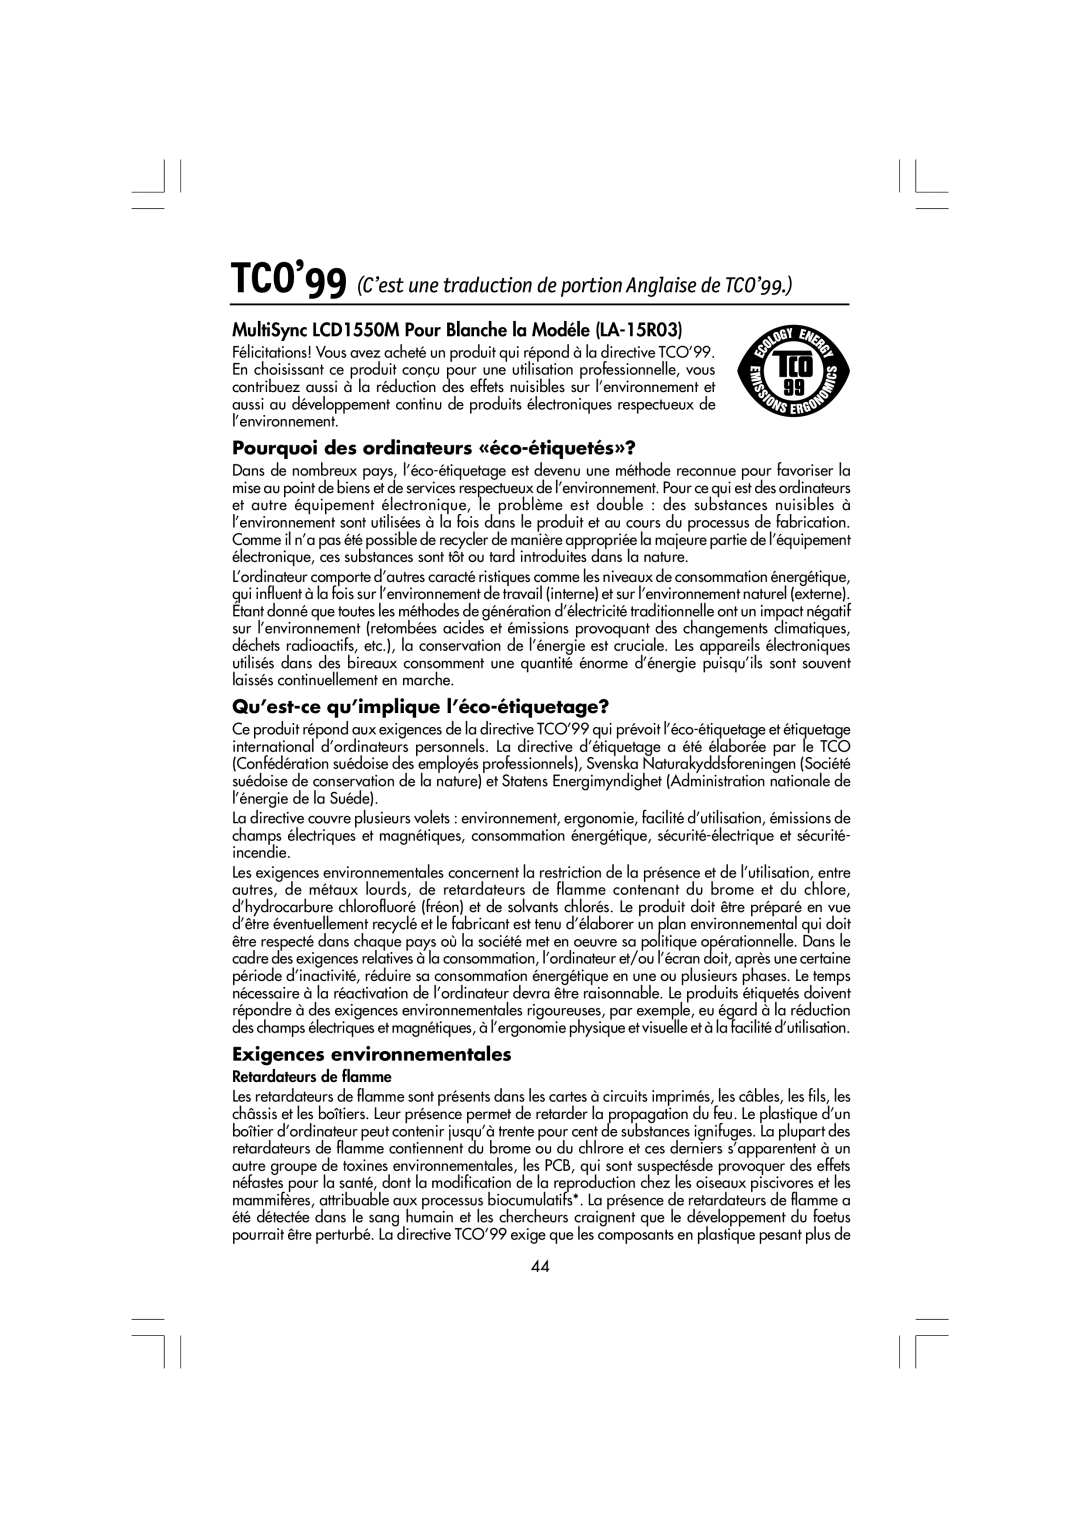 NEC manual TCO’99 C’est une traduction de portion Anglaise de TCO’99, MultiSync LCD1550M Pour Blanche la Modéle LA-15R03 